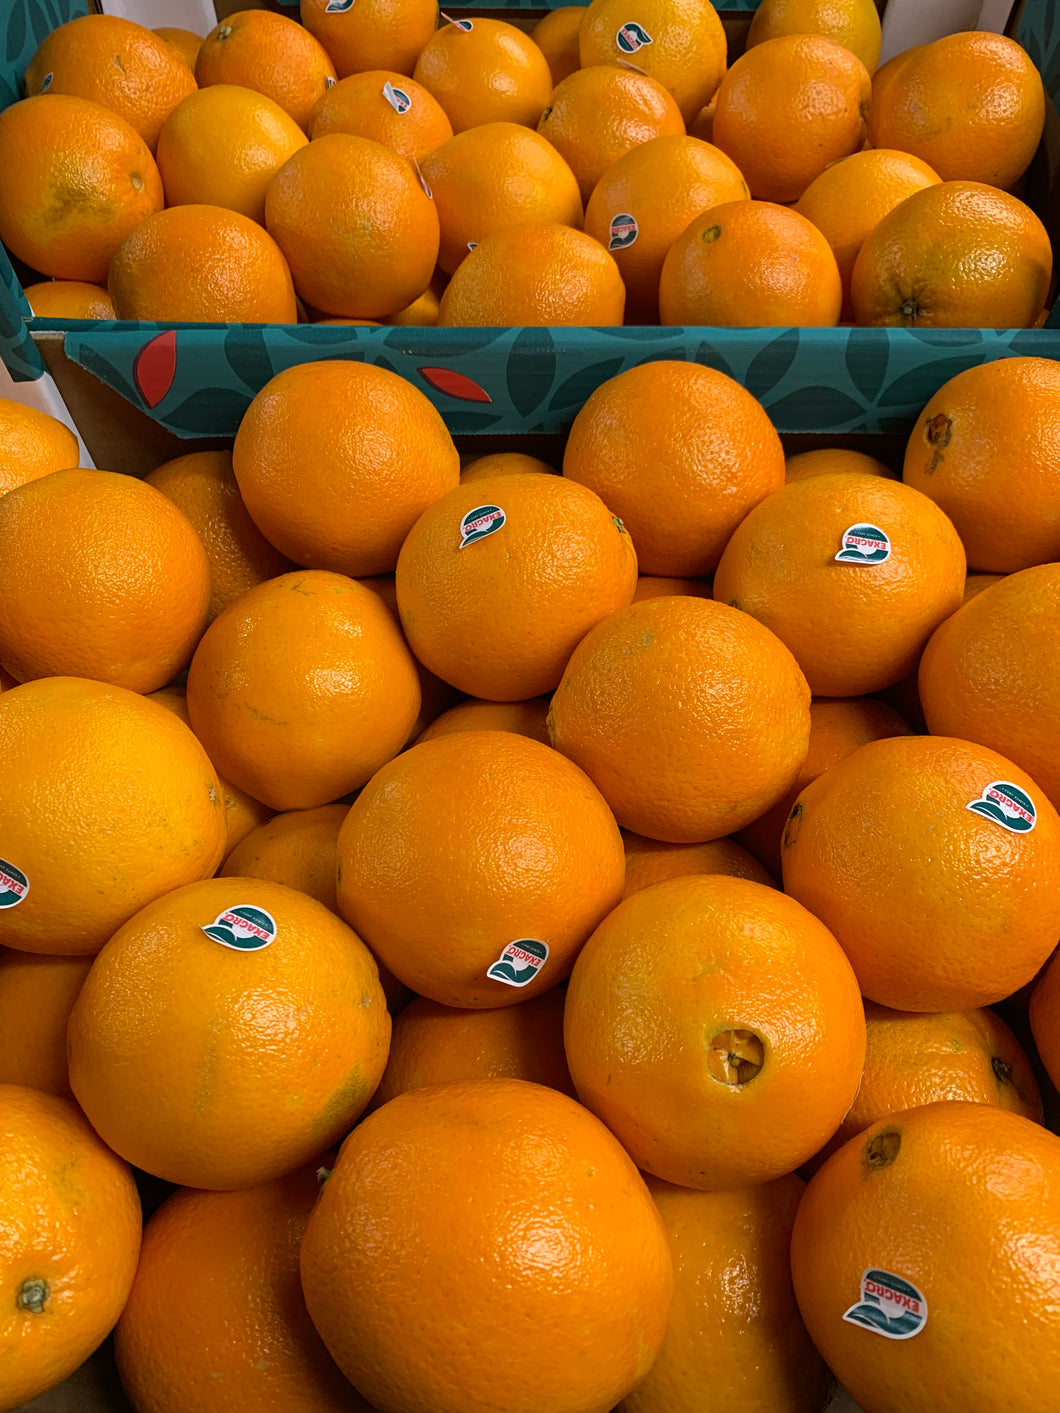 Large oranges